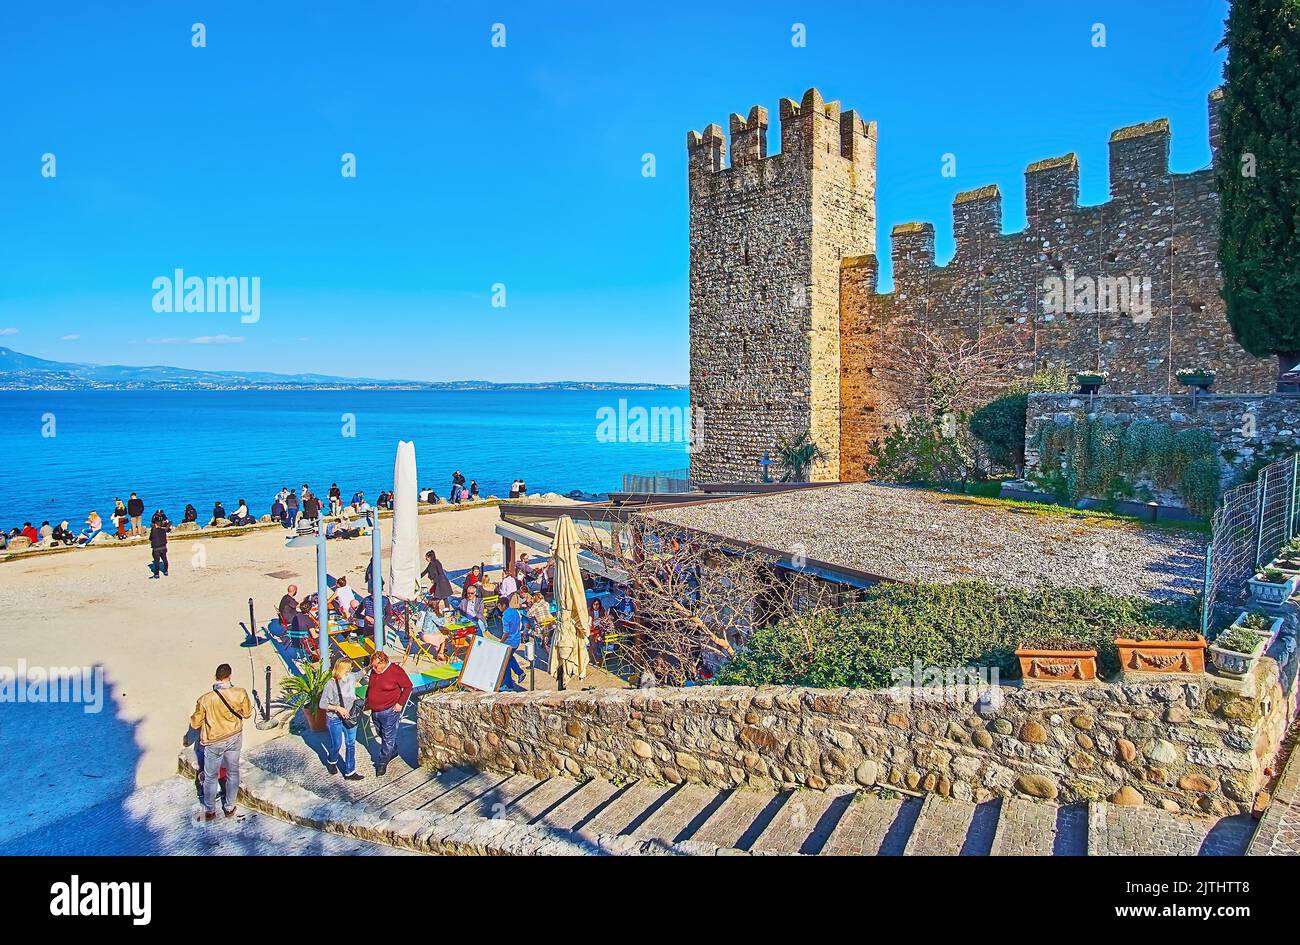 SIRMIONE, ITALIA - 10 APRILE 2022: Le mura medievali e la torre del Castello Scaligero con la spiaggia della Spiaggia del Prete e le acque blu del Lago di Garda, in Apri Foto Stock